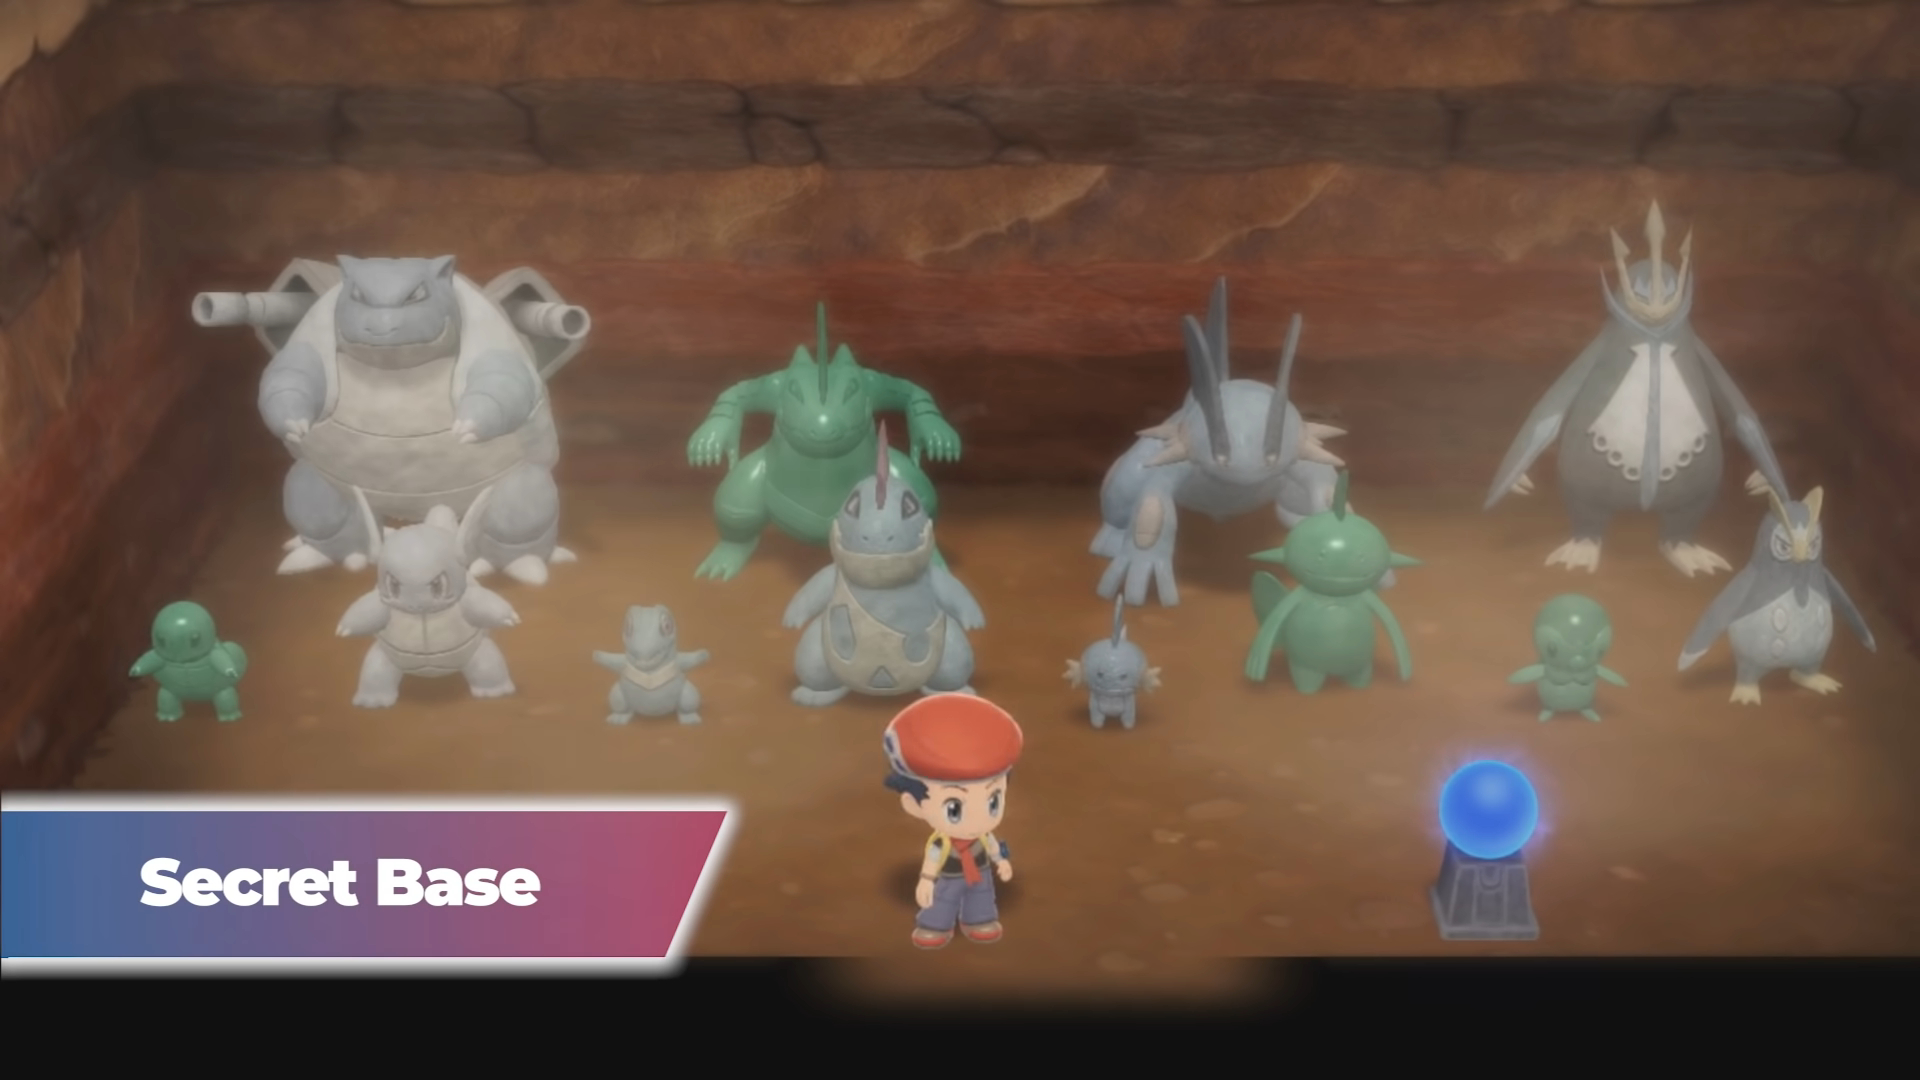 Standing in the secret base full of Pokémon statues.